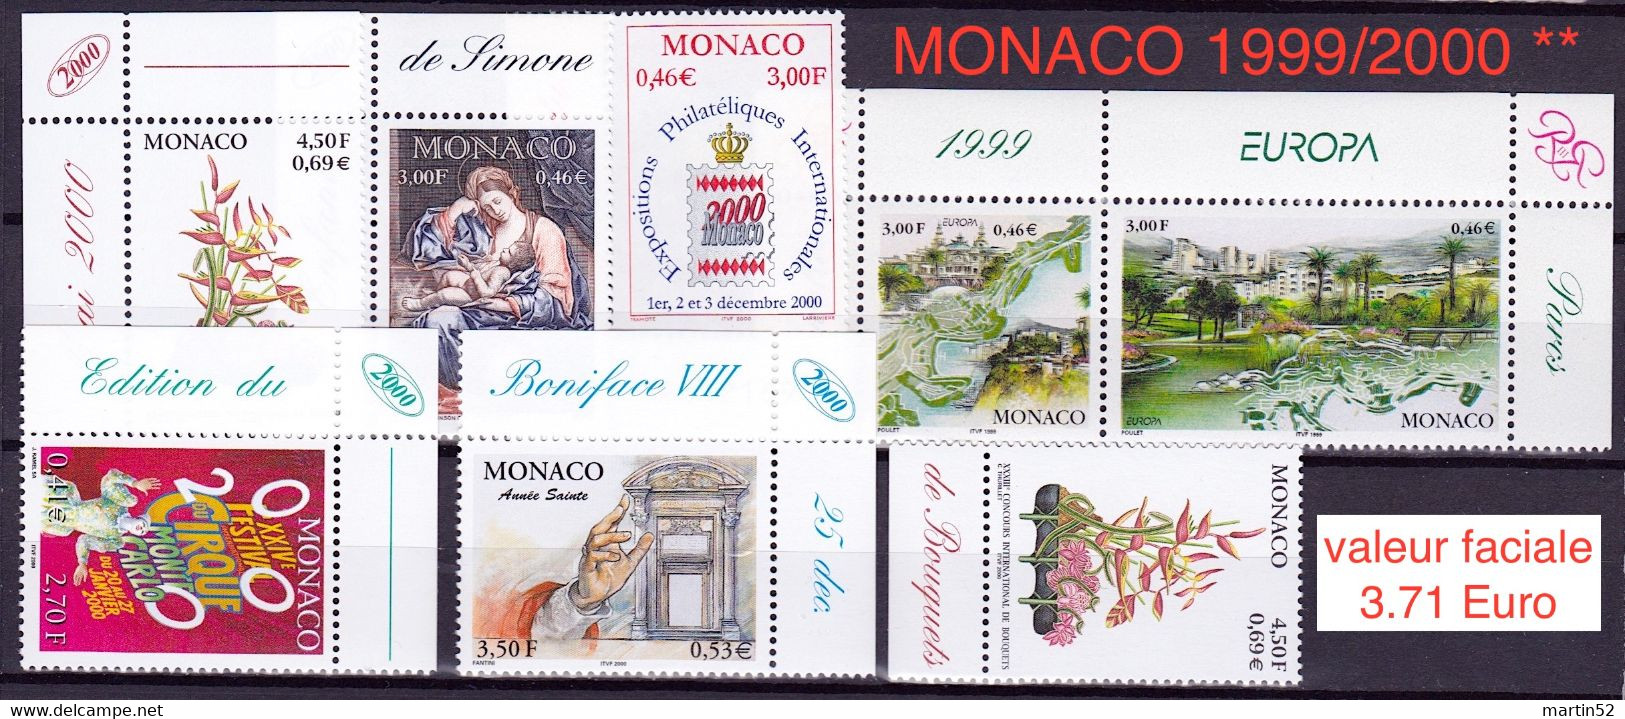 Monaco 1999/2000: Jeu De 8 Timbres-poste En FF & Euro Au Valeur Faciale De 3.71 Euro ** MNH - Collections, Lots & Séries